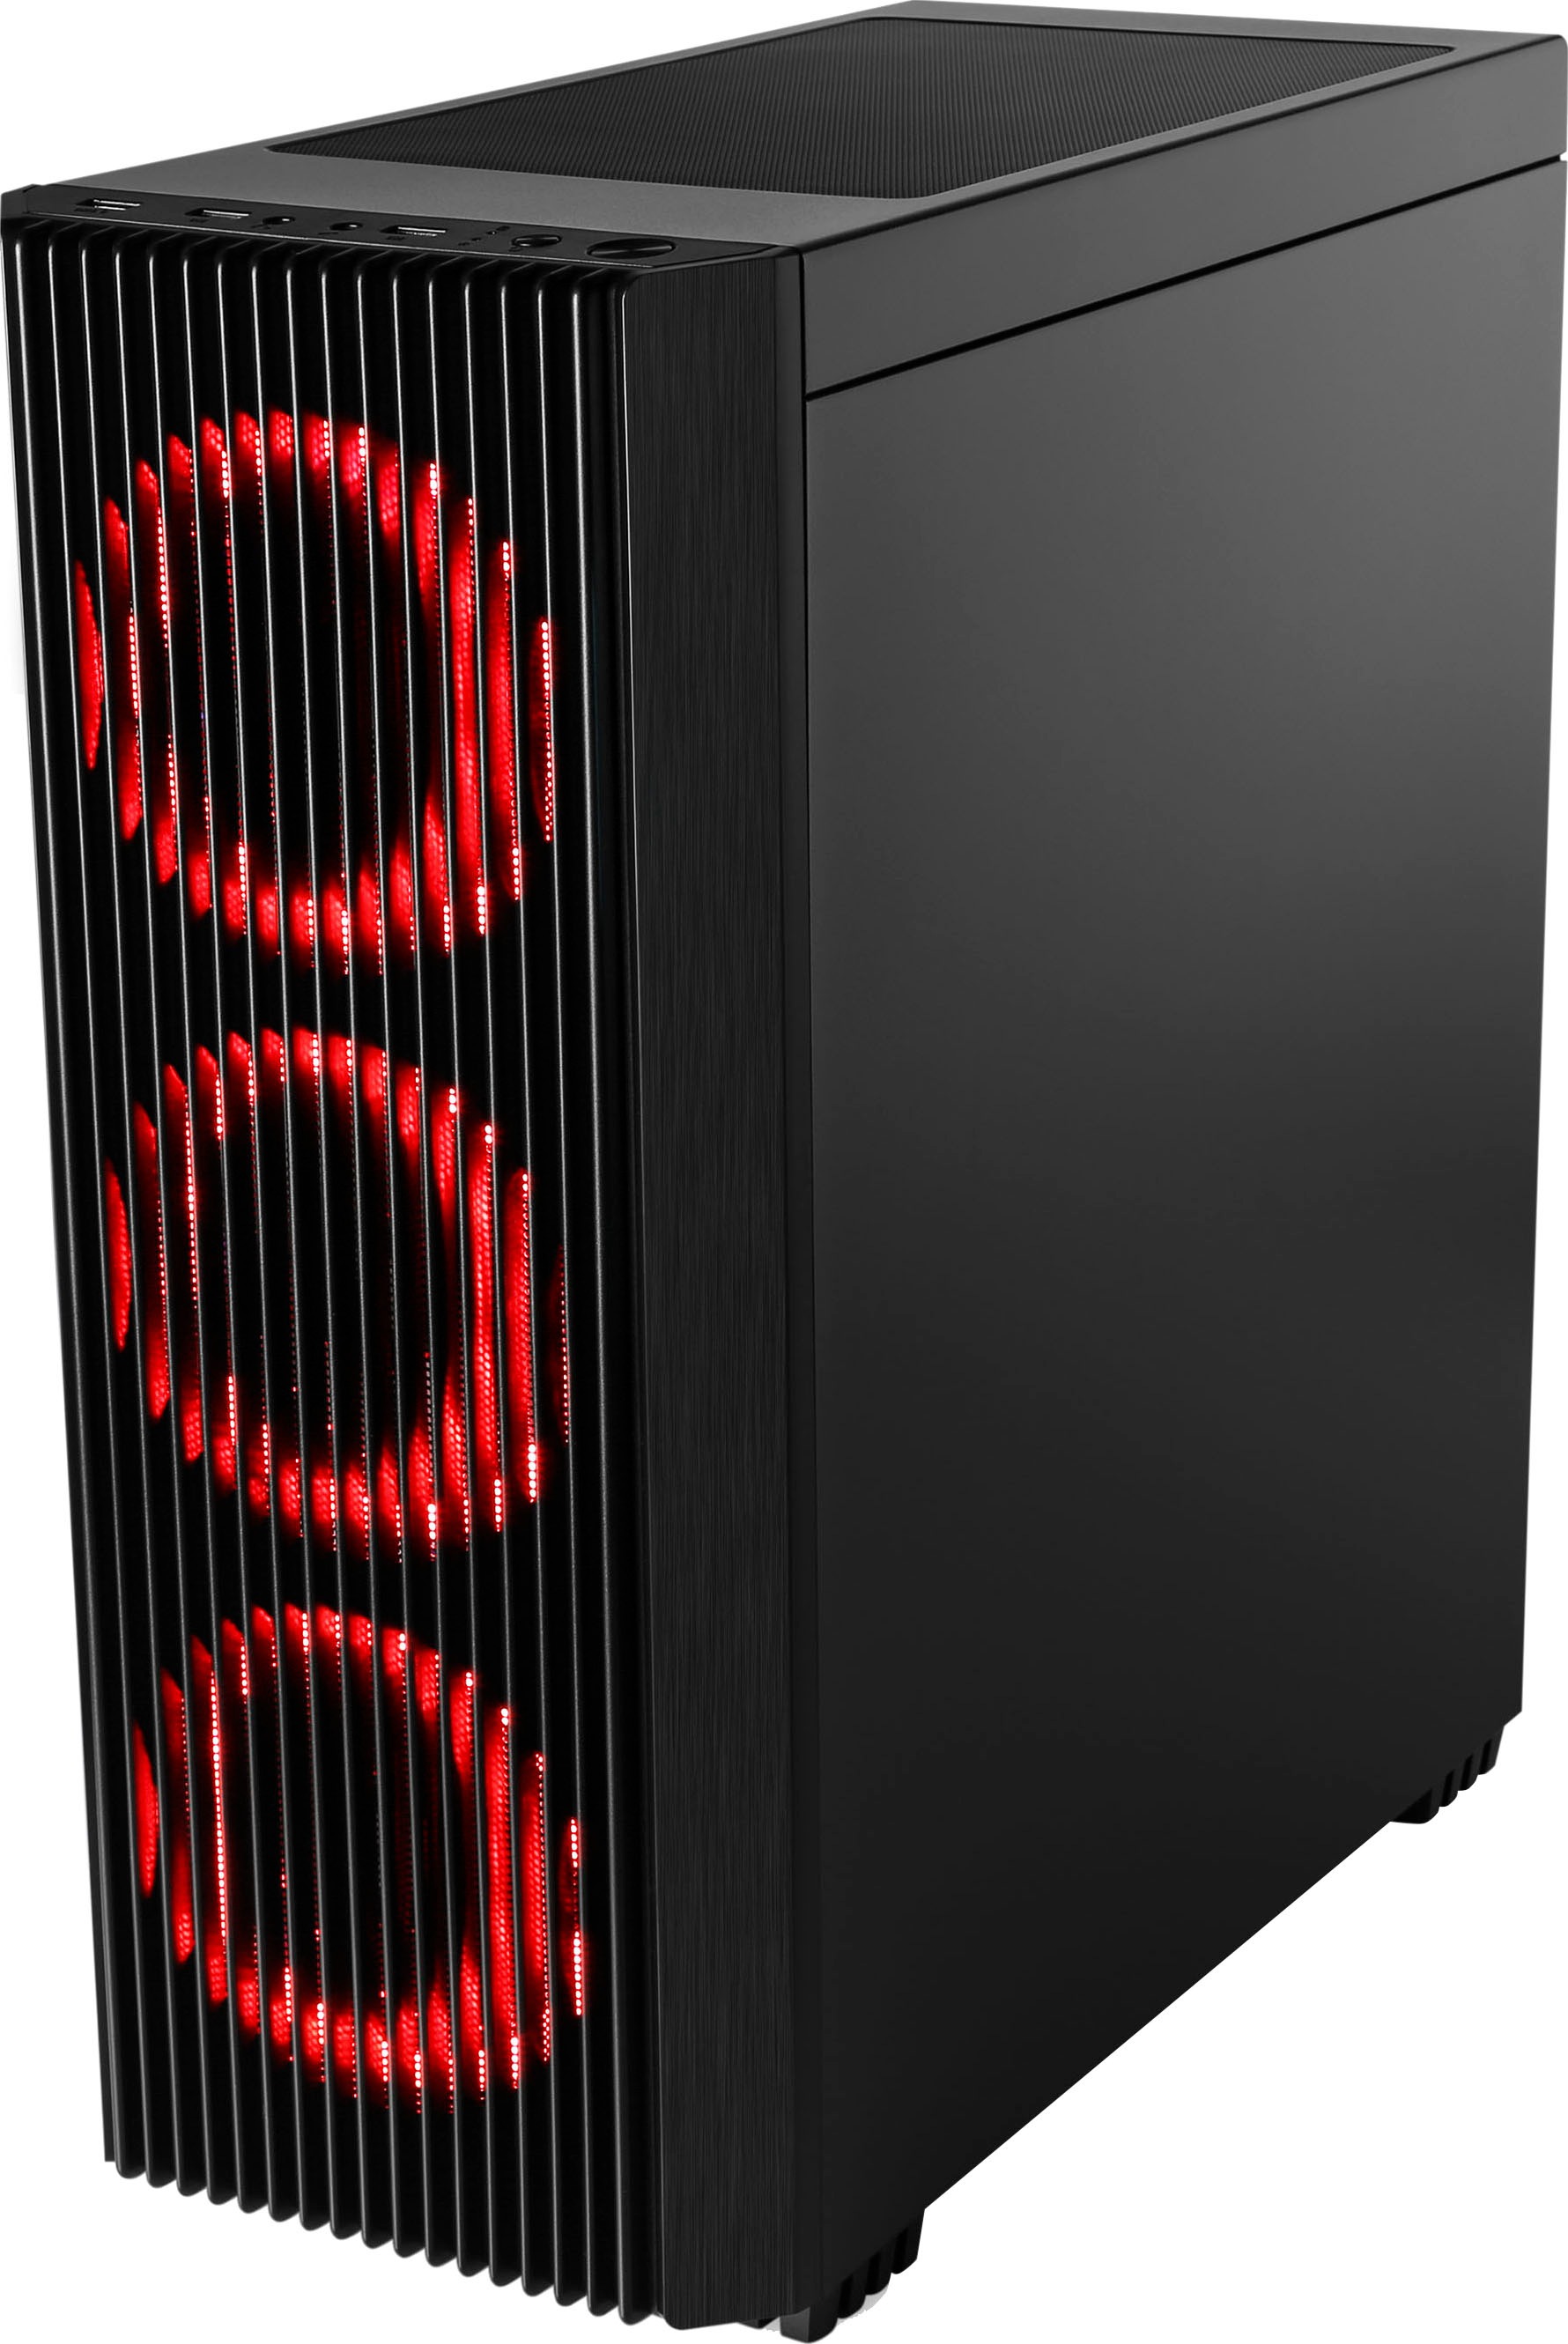 CSL Gaming-PC »HydroX V8611 jetzt bestellen OTTO bei Wasserkühlung«